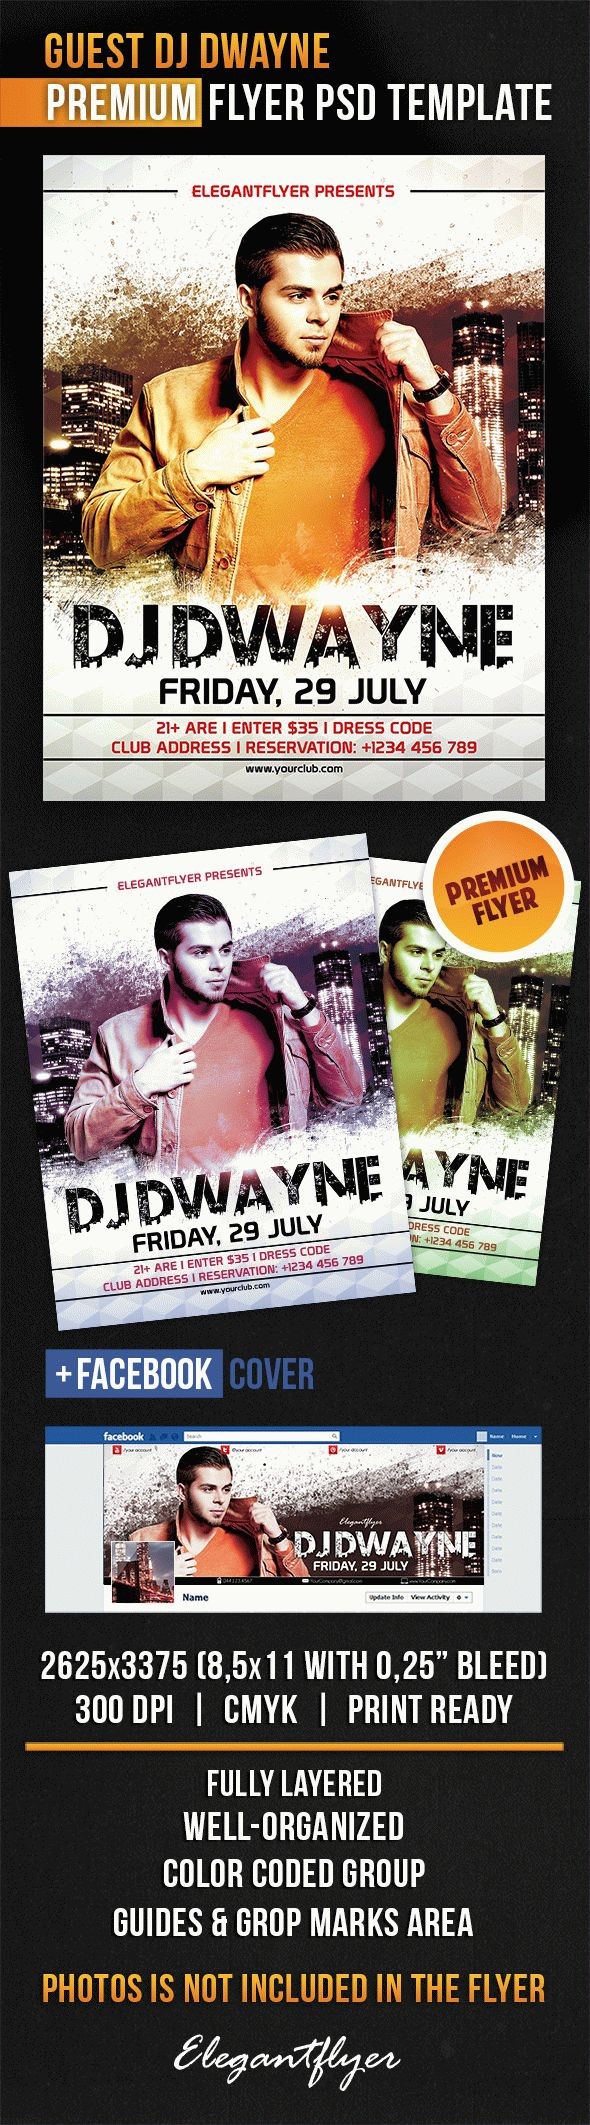 Guest Dj Dwayne would be translated as "DJ invité Dwayne." by ElegantFlyer